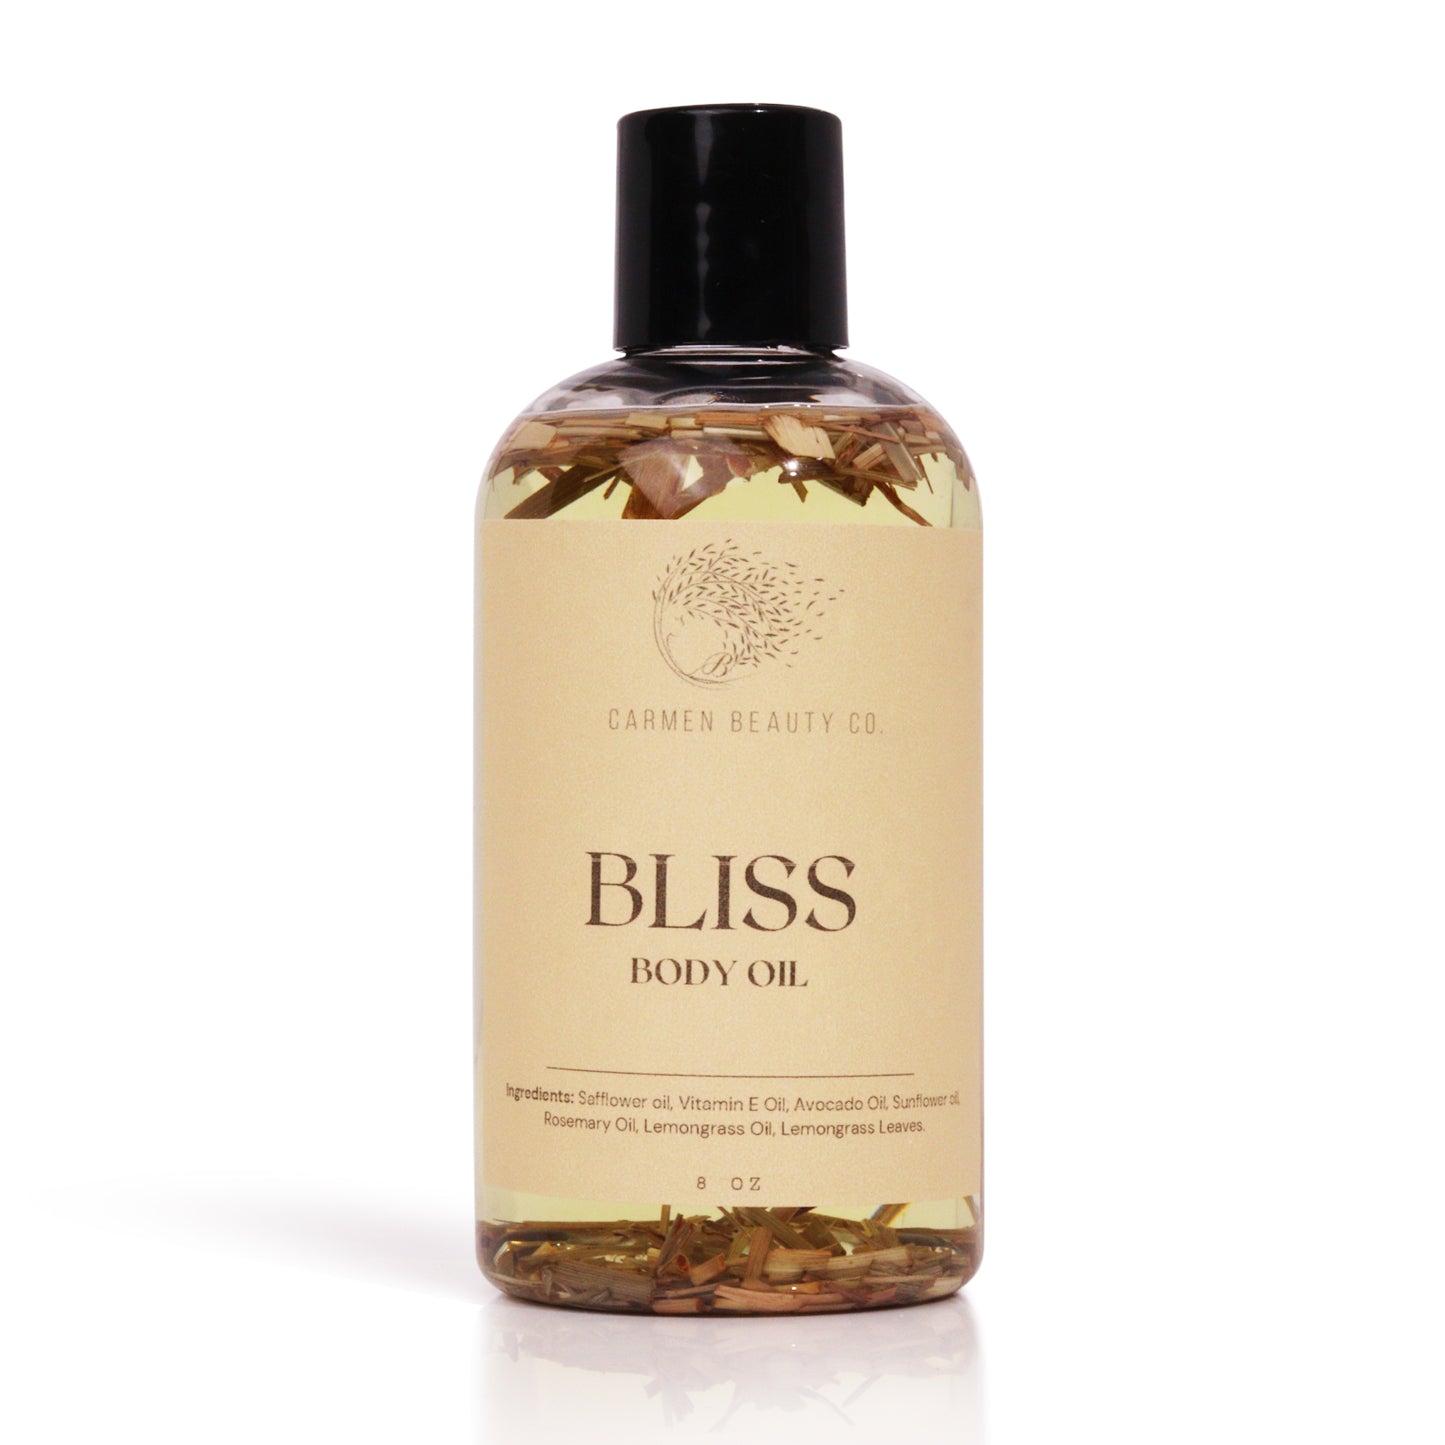 Bliss Body Oil